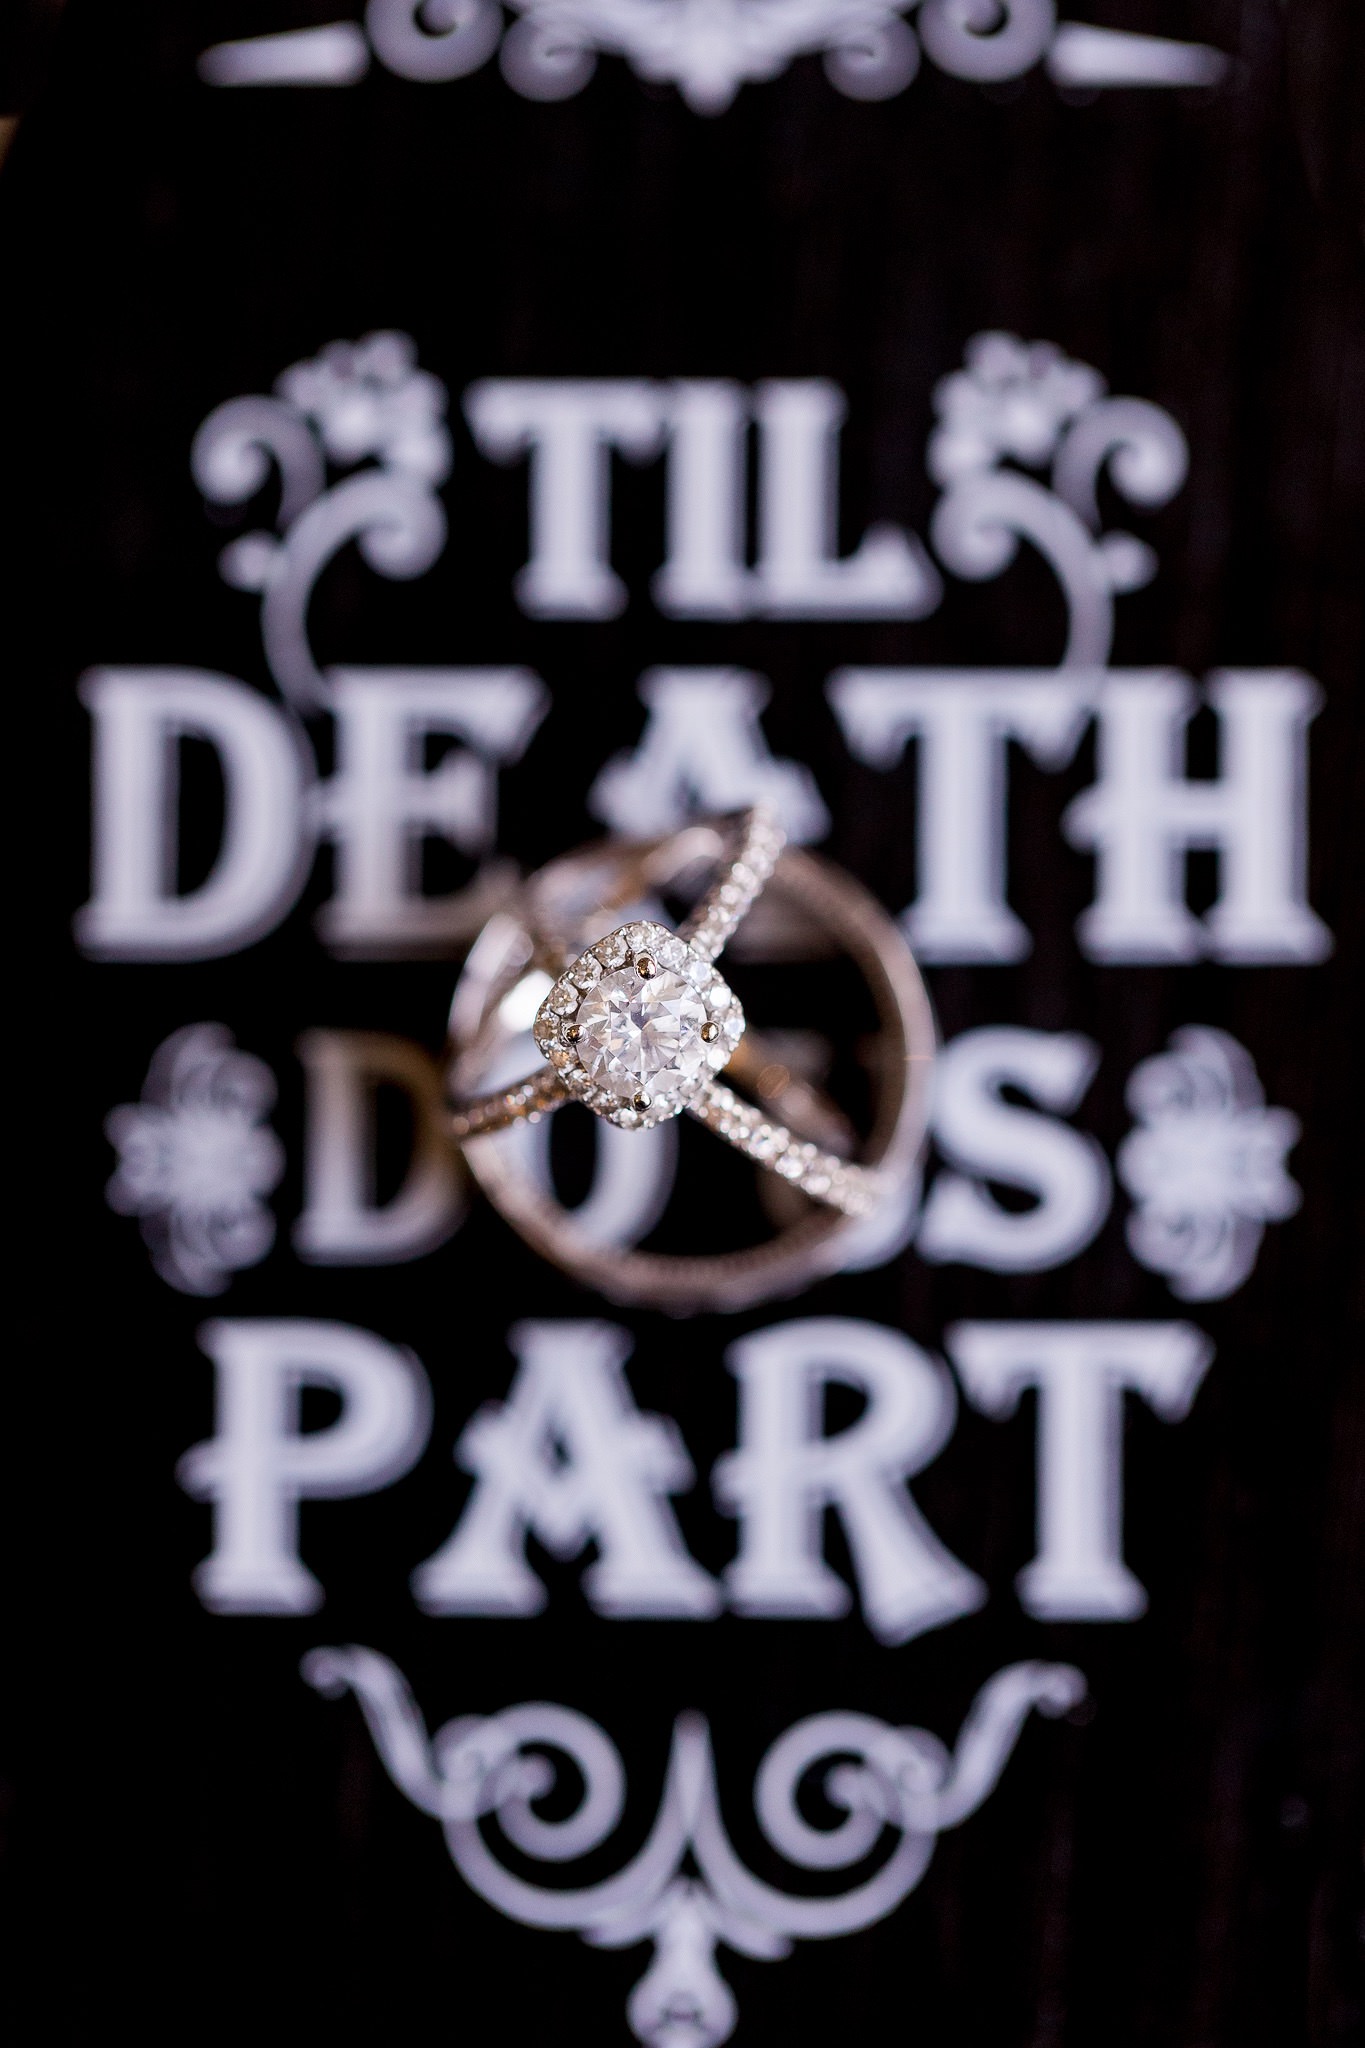 A Black & Gold Wedding at the Dominion Country Club by Dawn Elizabeth Studios, San Antonio Wedding Photographer